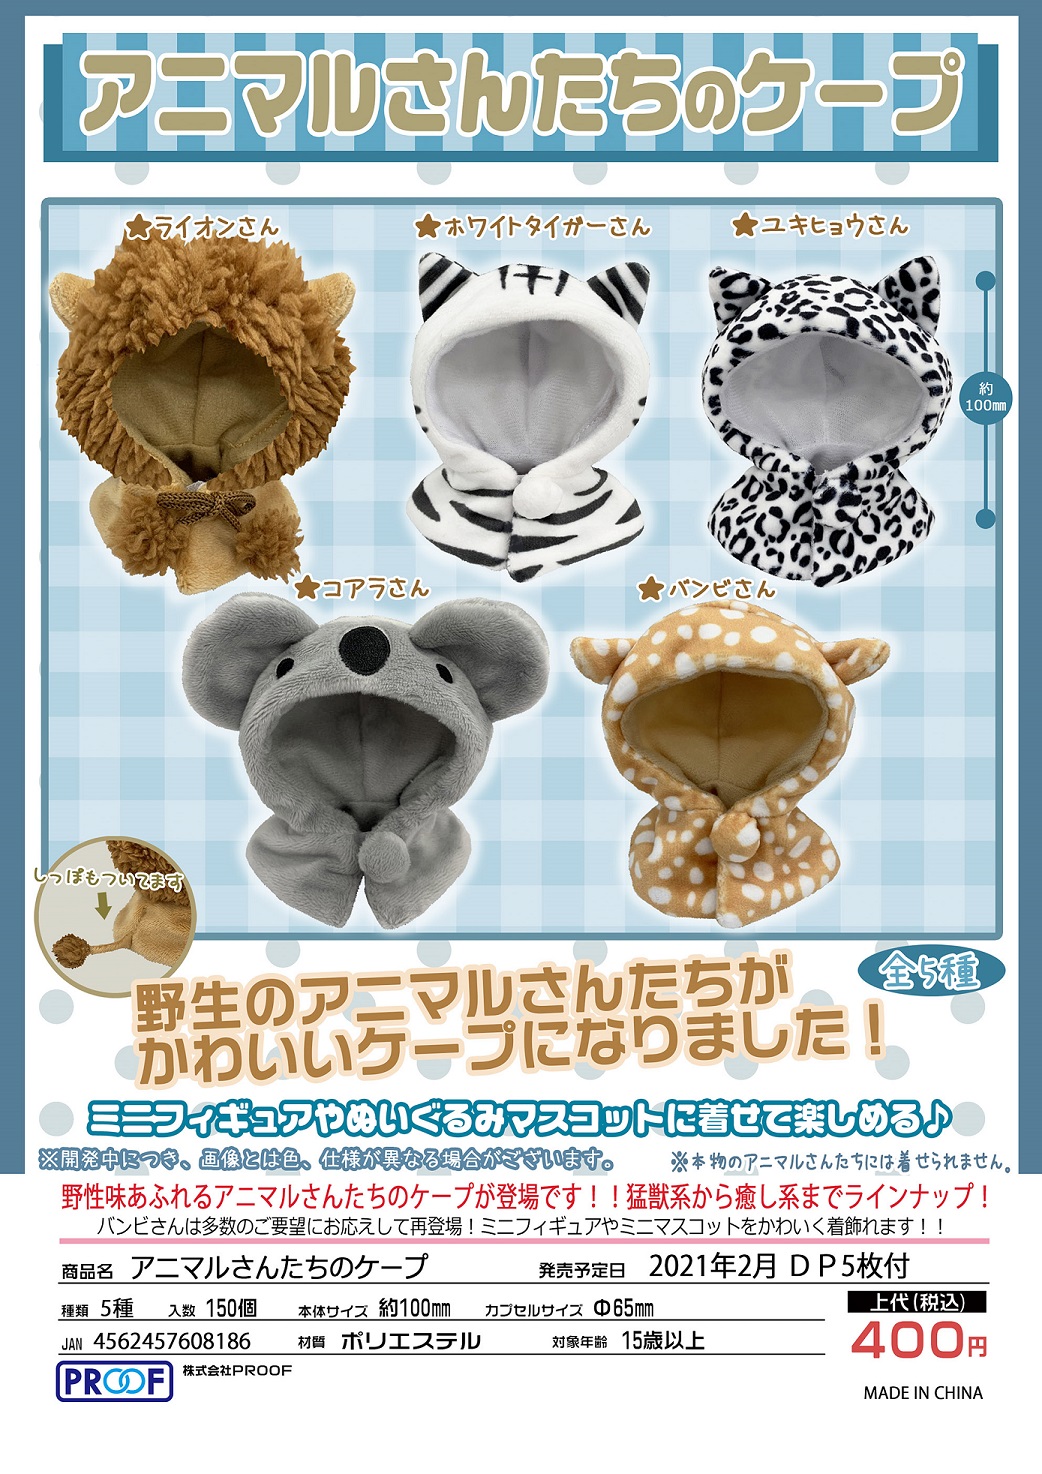 特价！【B】400日元扭蛋 粘土人外套 小动物披风 全5种 (1袋30个) 608186